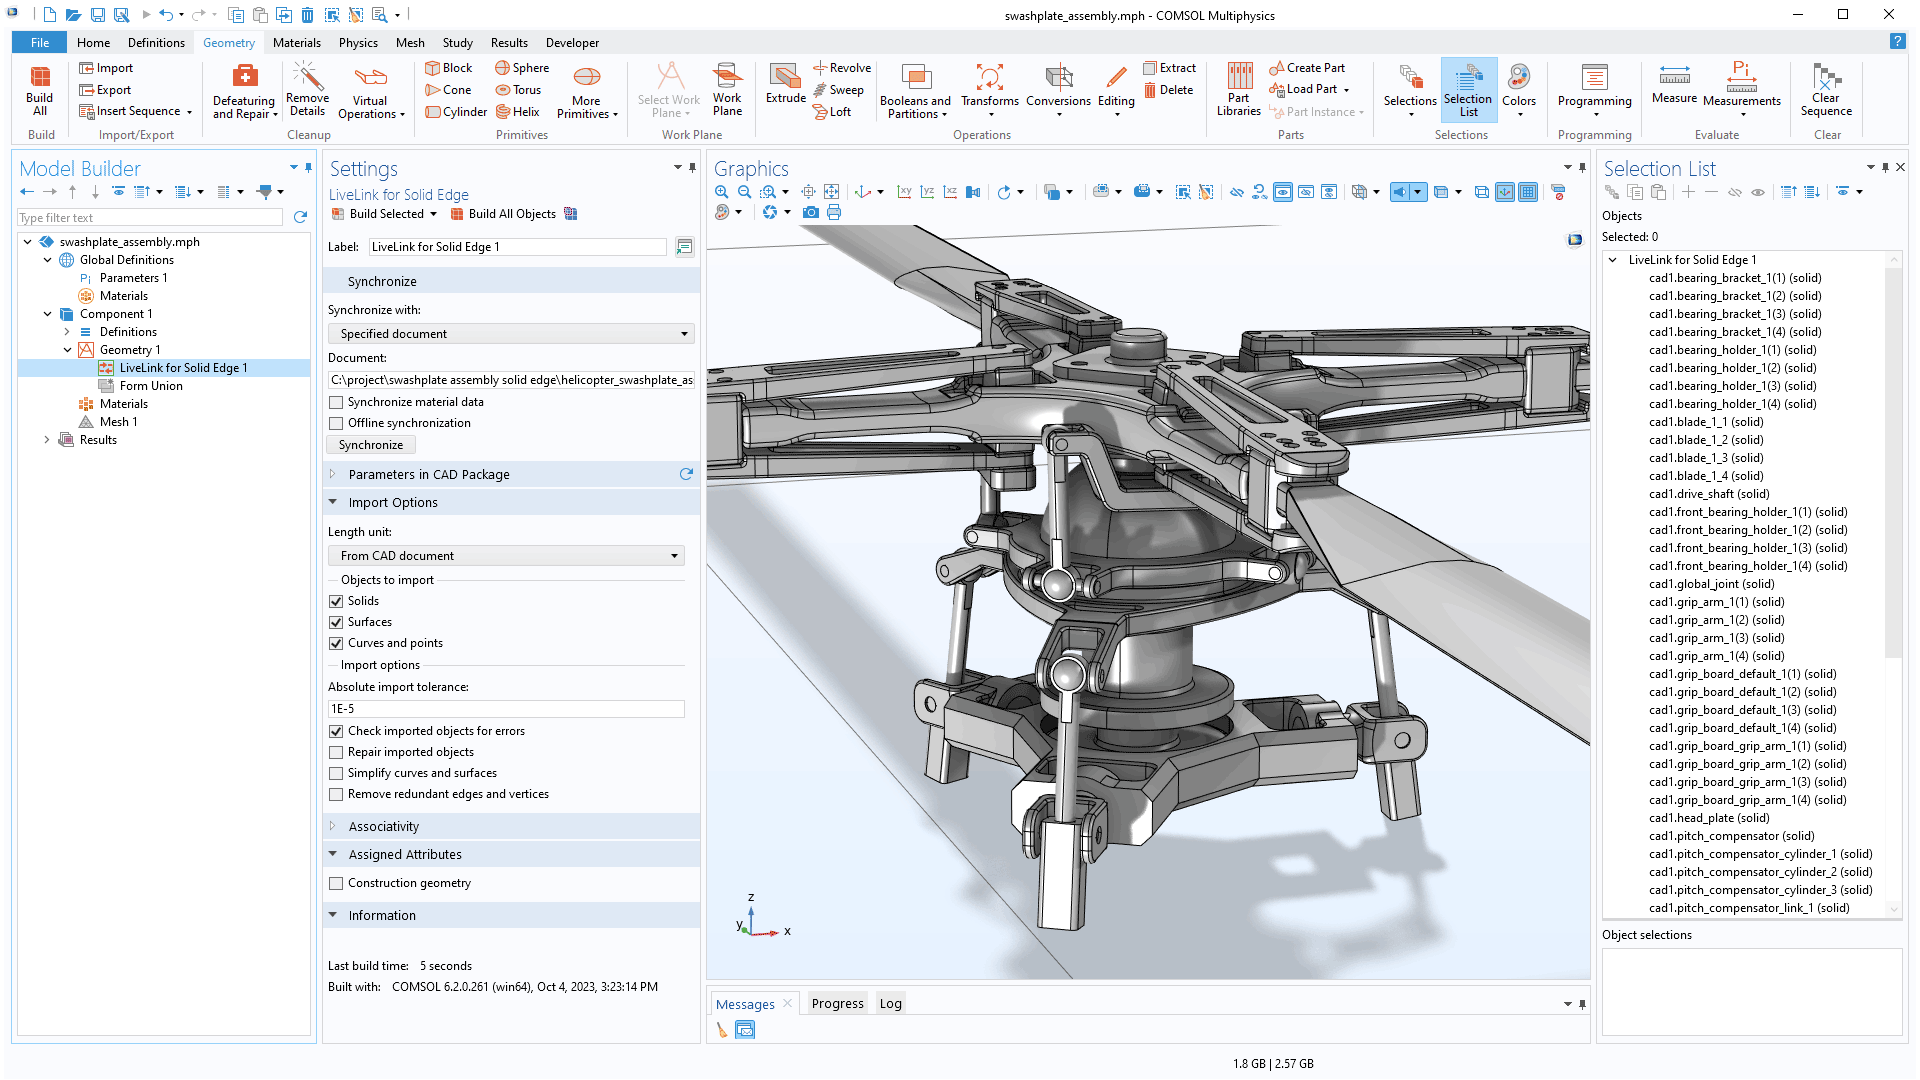 COMSOL Multiphysics 用户界面，显示了“模型开发器”，其中突出显示 LiveLink for Solid Edge 节点，并显示其对应的“设置”窗口；“图形”窗口中显示直升机模型；并打开了“选择列表”窗口。